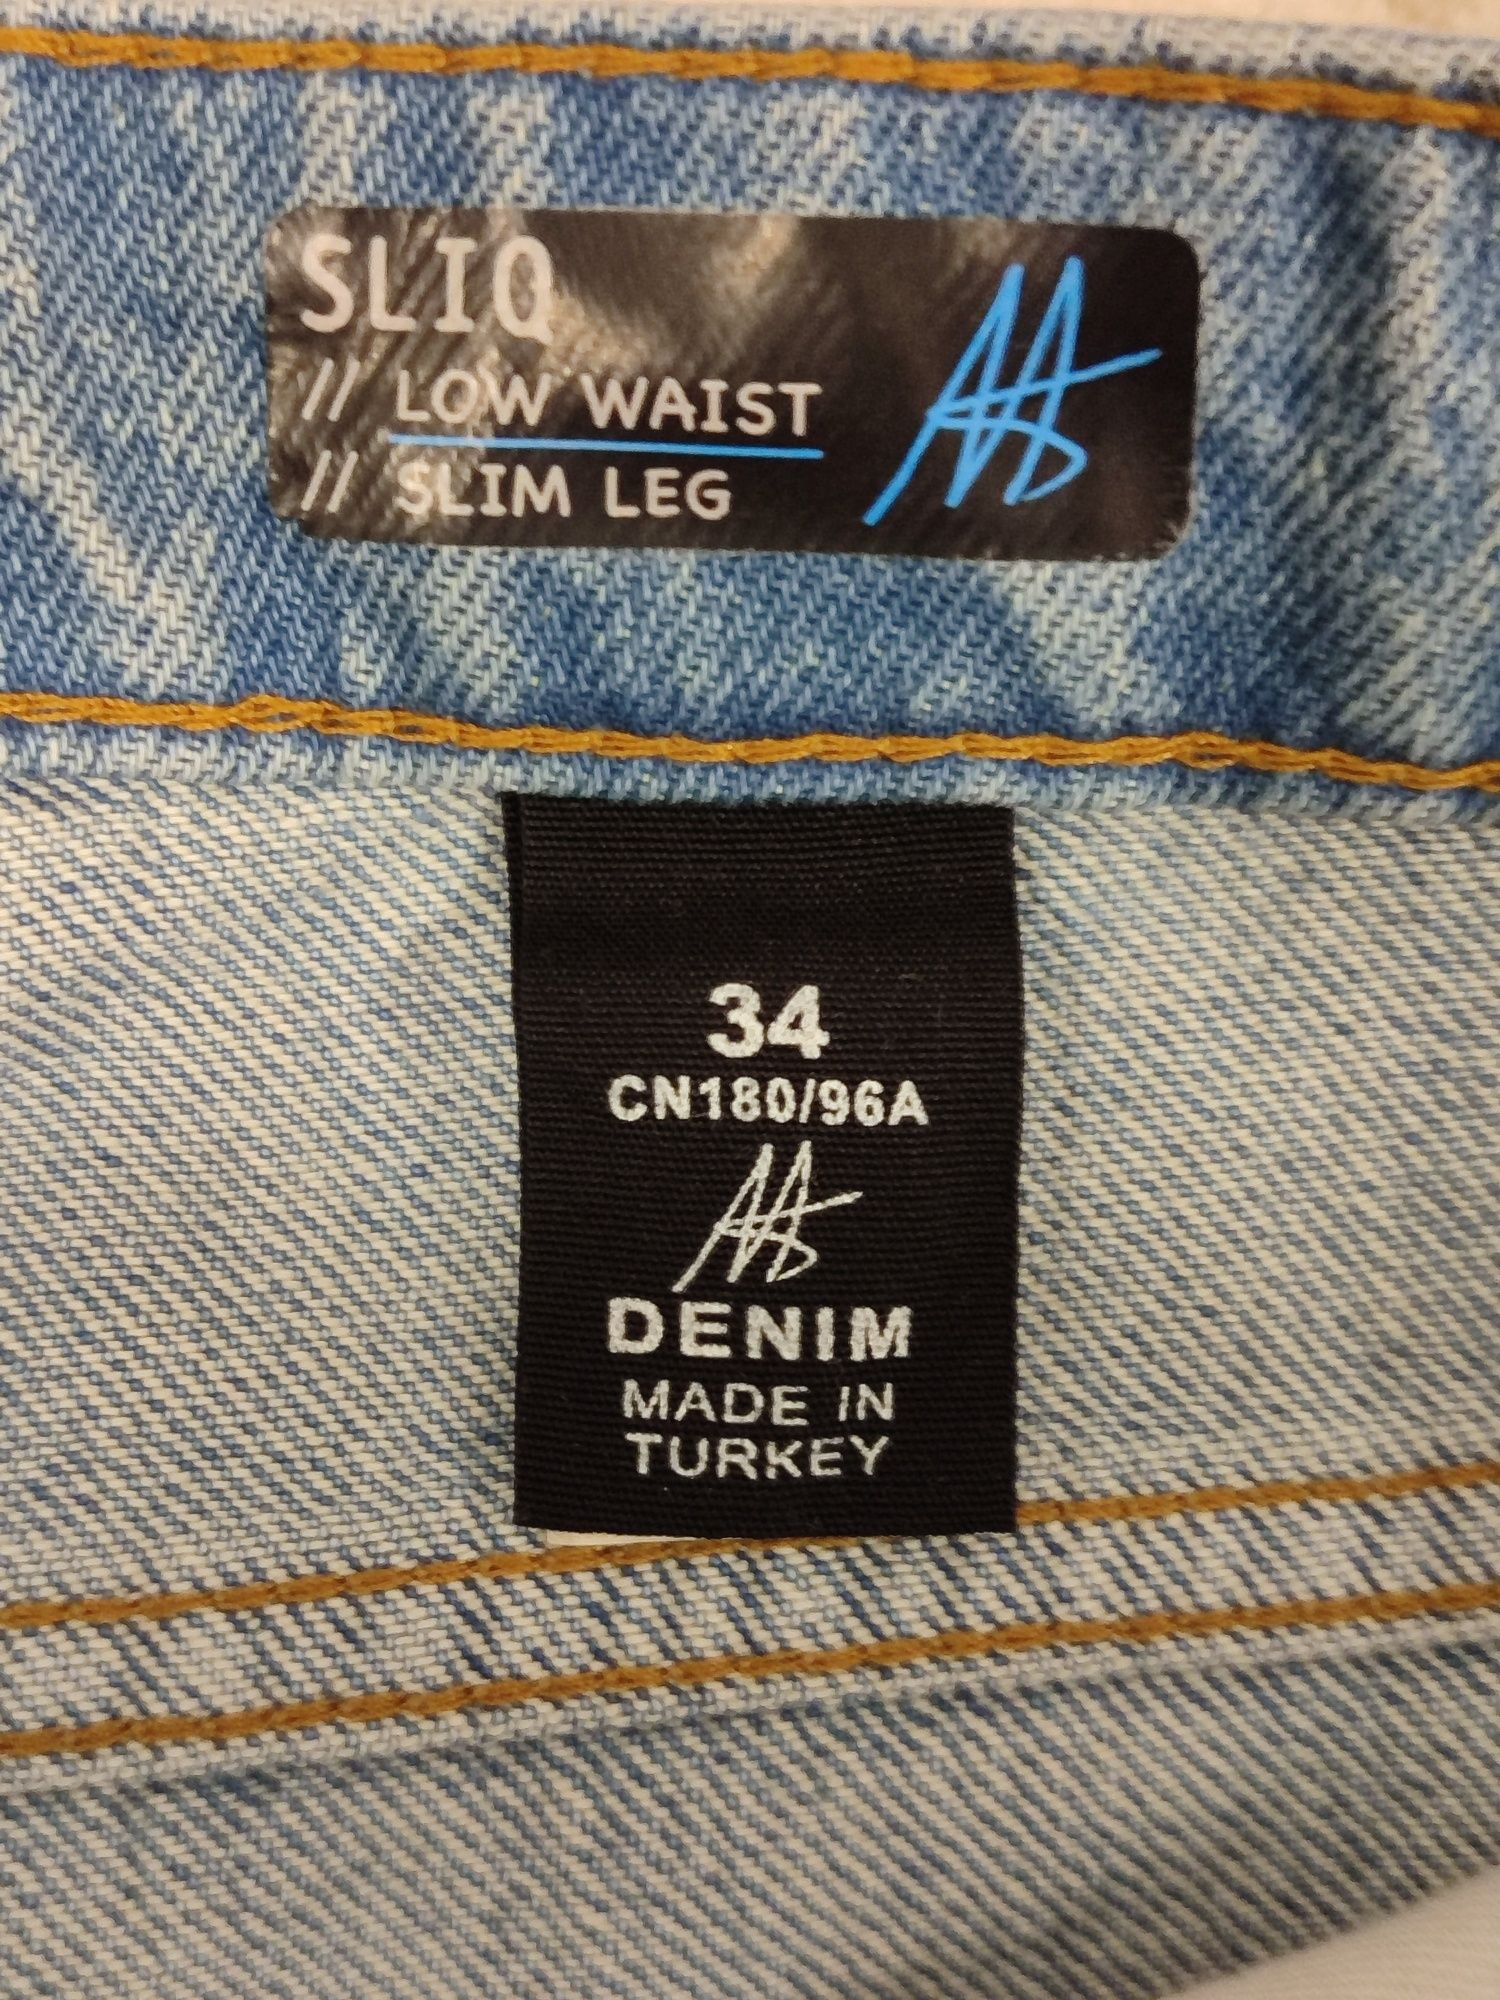 Продам джинсы мужской,36 размер, новый , производство Турция